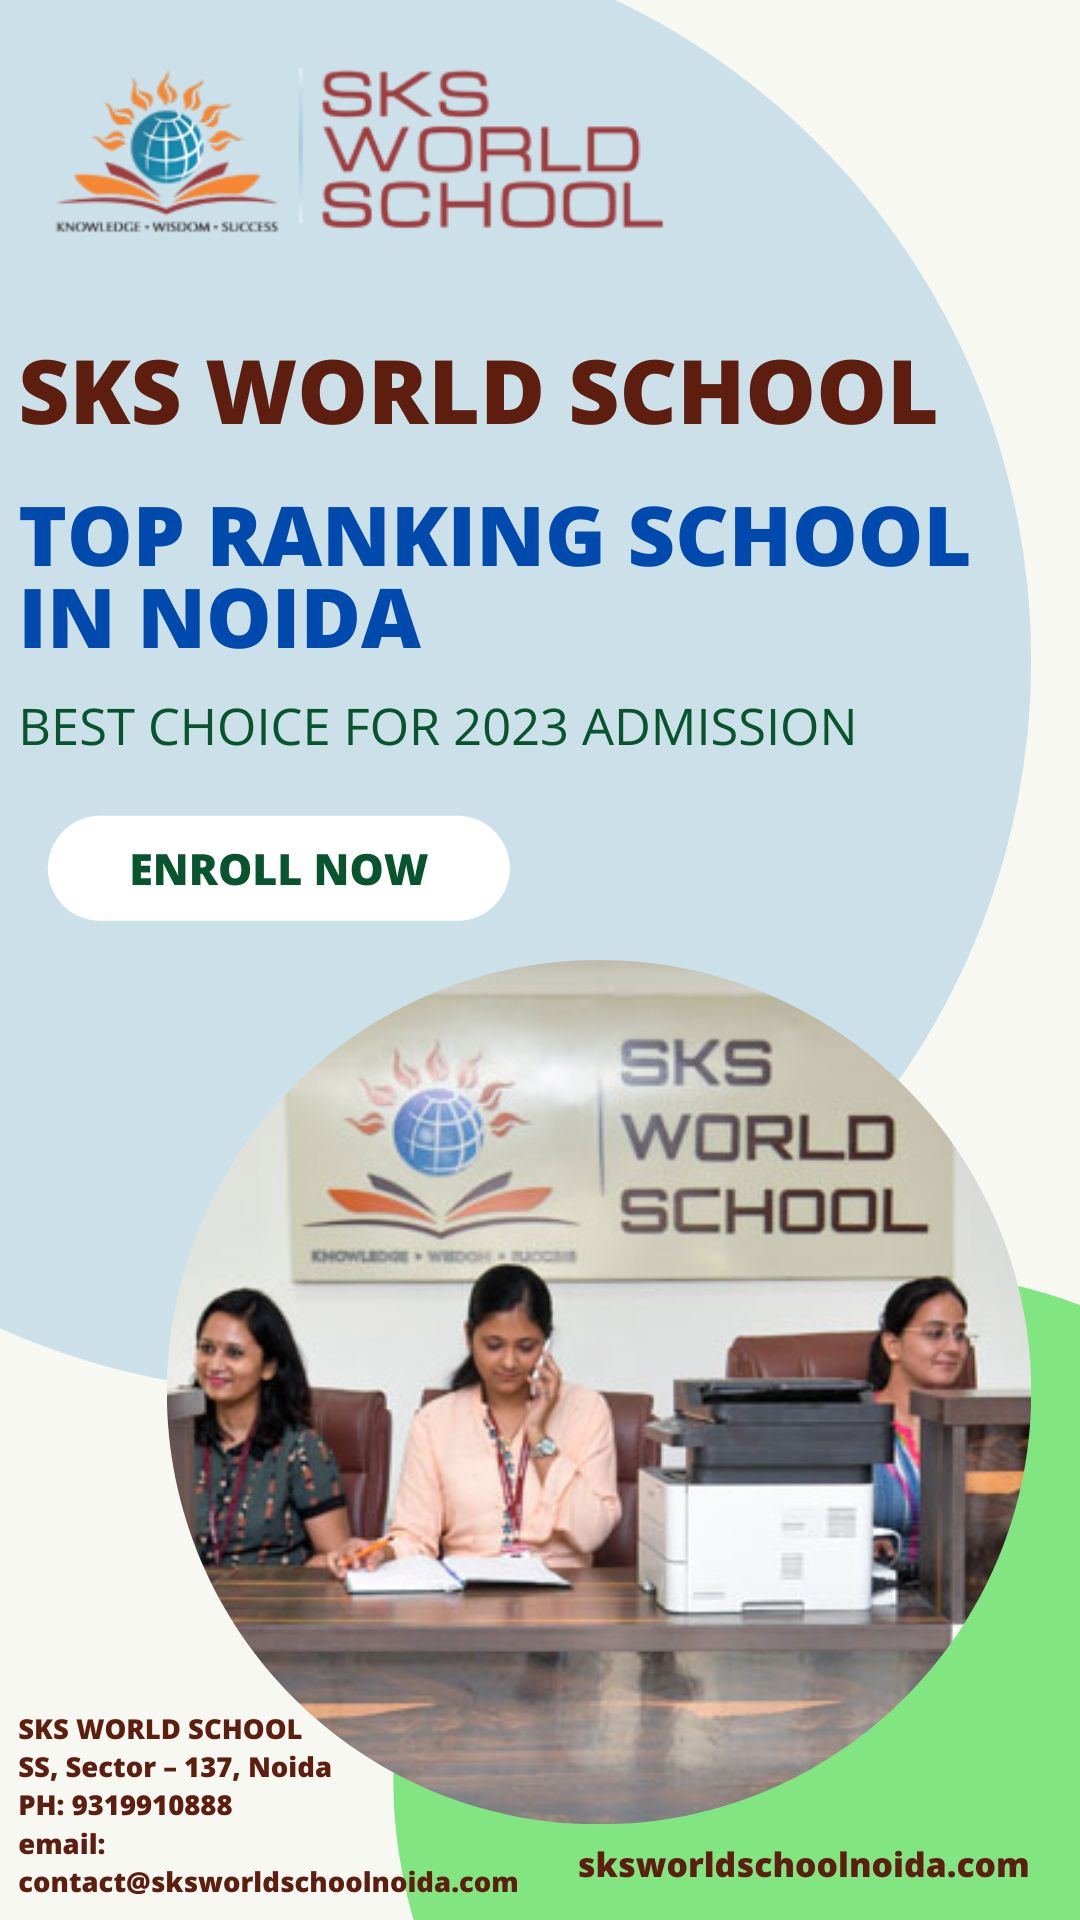 Top Ranking School in Noida